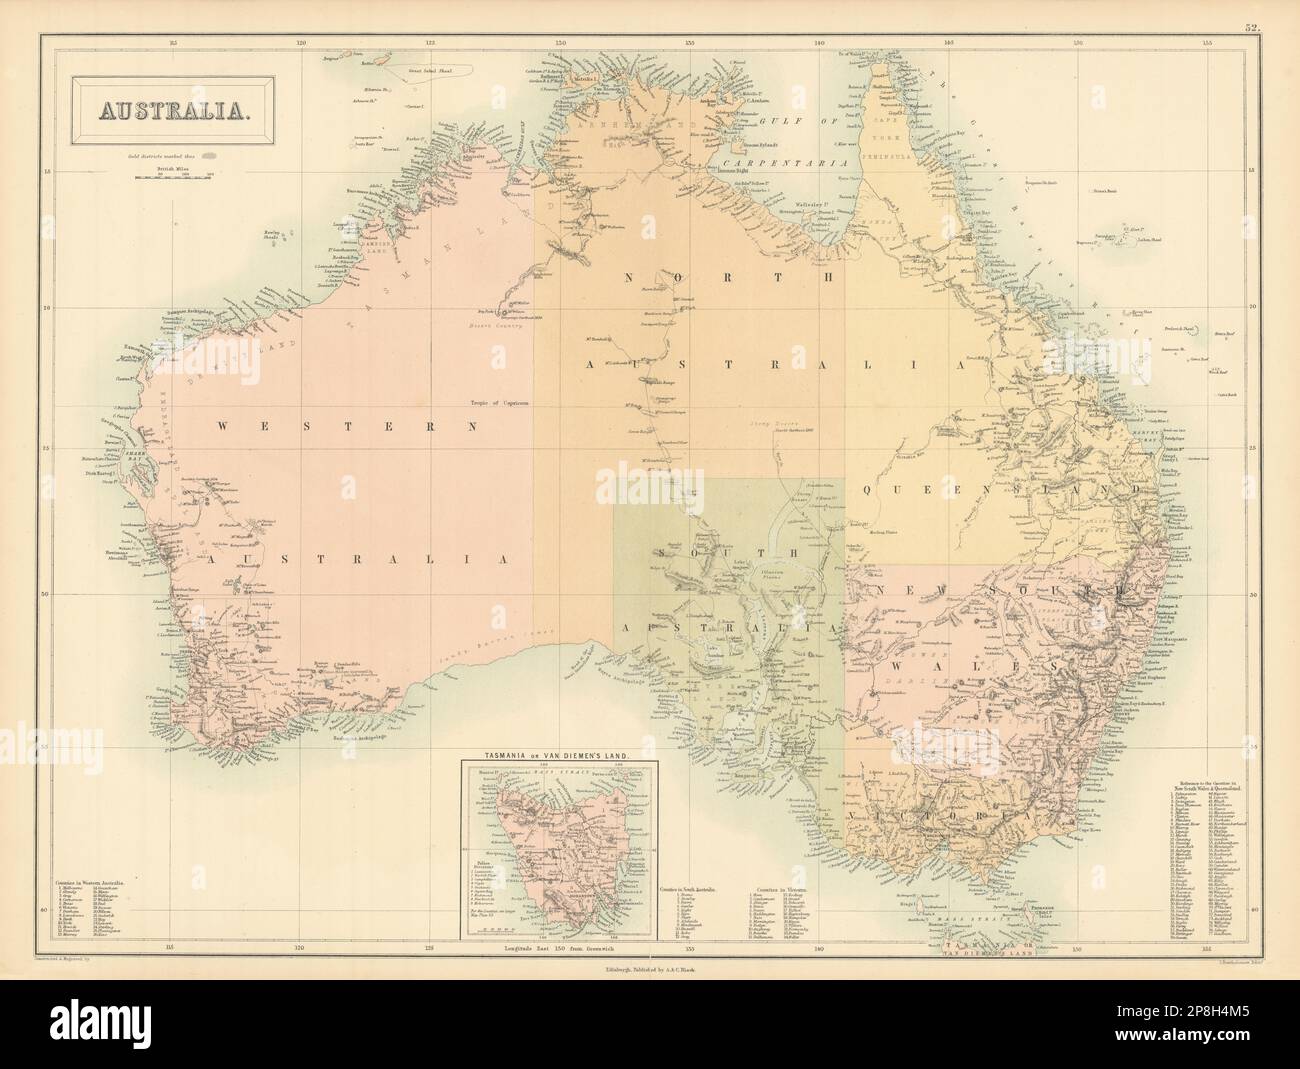 Australie. Sturt Stuart Austin Gregory routes des explorateurs. BARTHOLOMEW 1862 carte Banque D'Images